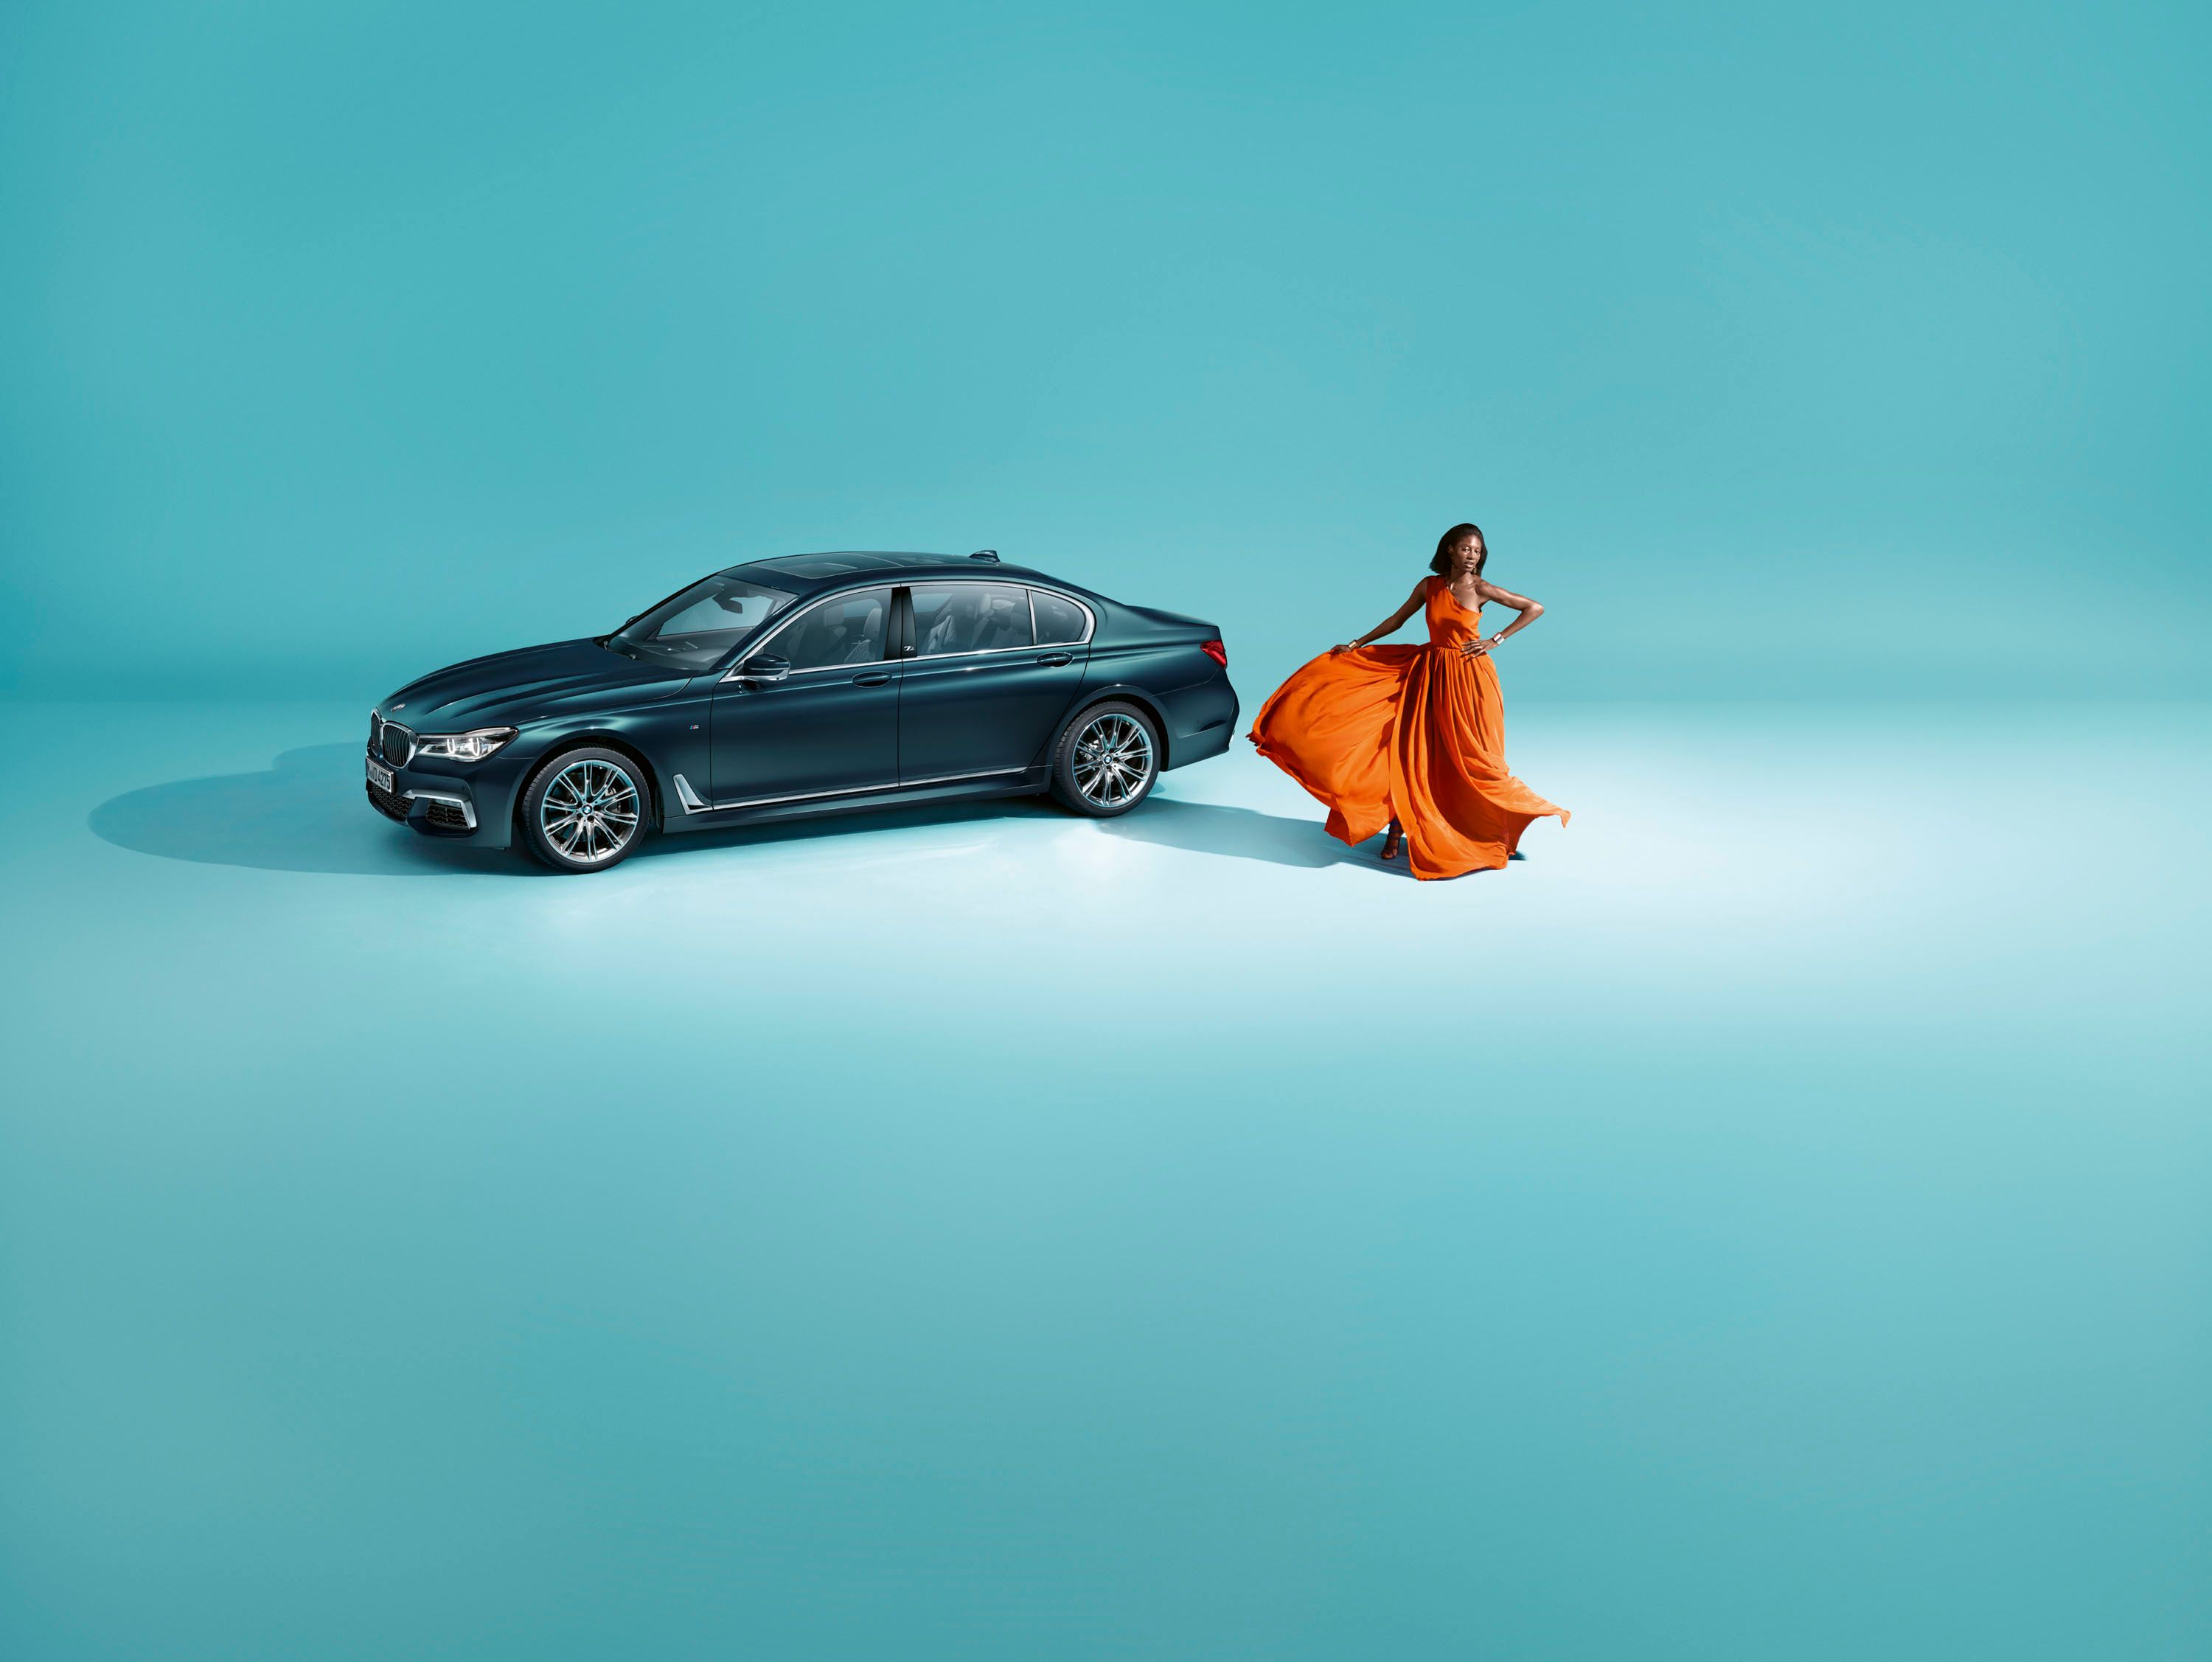 2017 BMW 7 Series Edition 40 Jahre